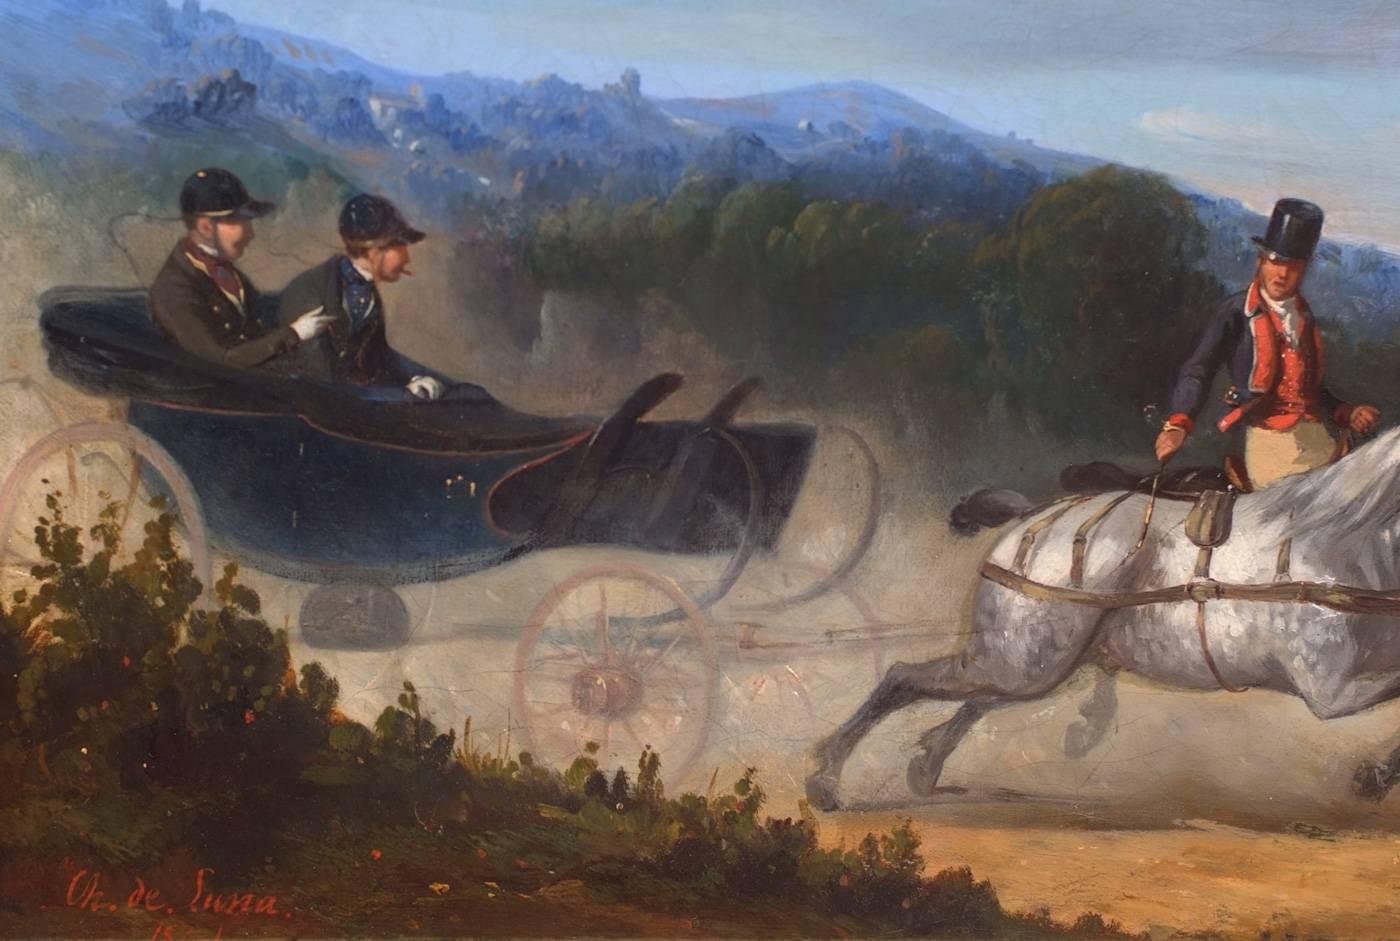 Gemälde des 19. Jahrhunderts – Pferde und Kutschen – Charles de Luna (1812-1866)  – Painting von Charles De Luna